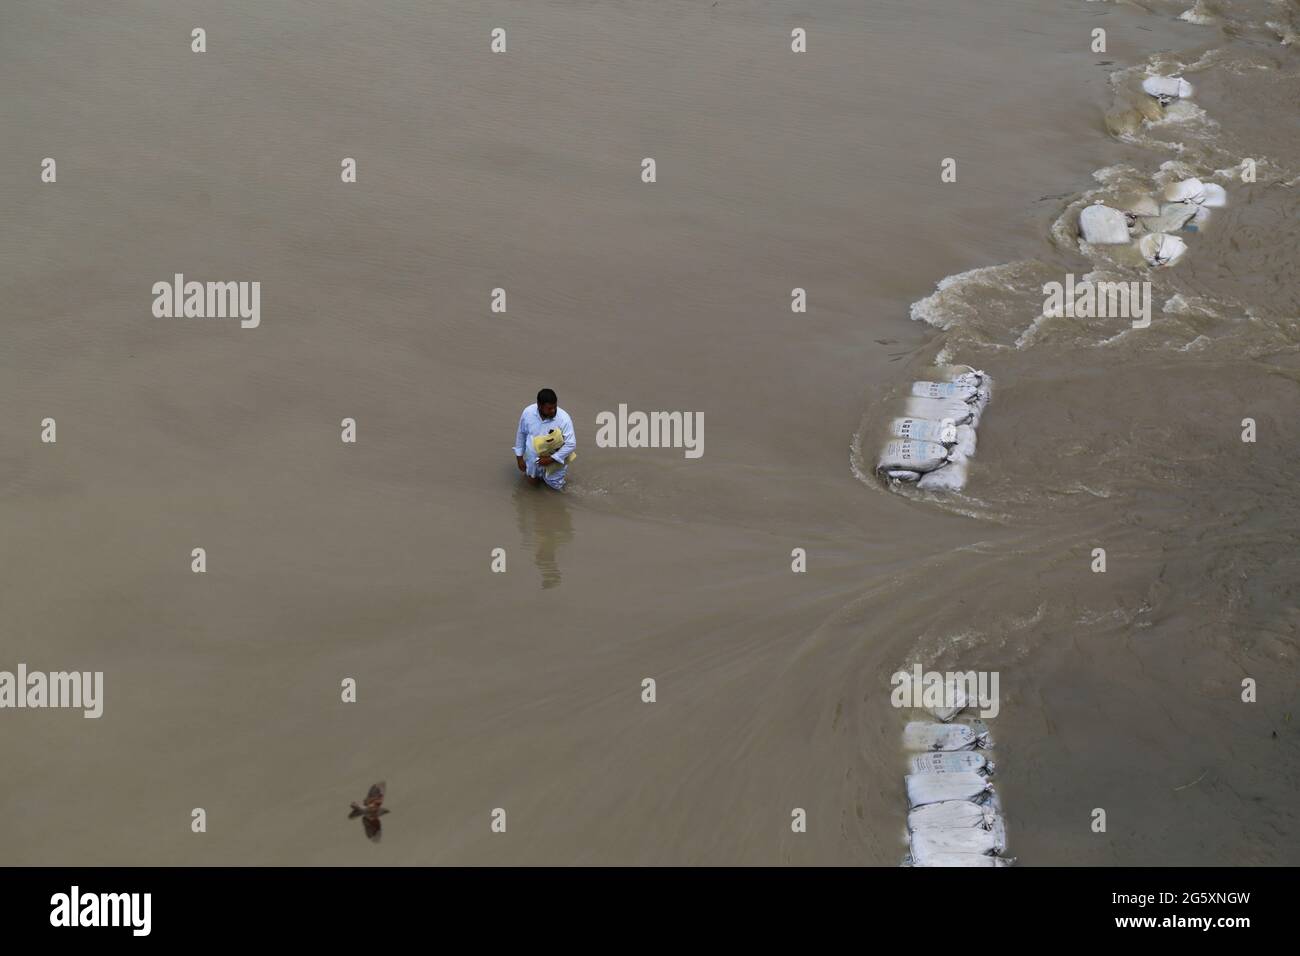 Un homme marche à travers les eaux de crue lors de l'inondation de la mousson à Munshiganj, près de Dhaka, au Bangladesh, le 28 juillet 2020. Plus de 9.6 millions de personnes ont été touchées par des inondations dues à la mousson, qui ont dévasté de vastes régions de l'Inde, du Bangladesh et du Népal. Banque D'Images